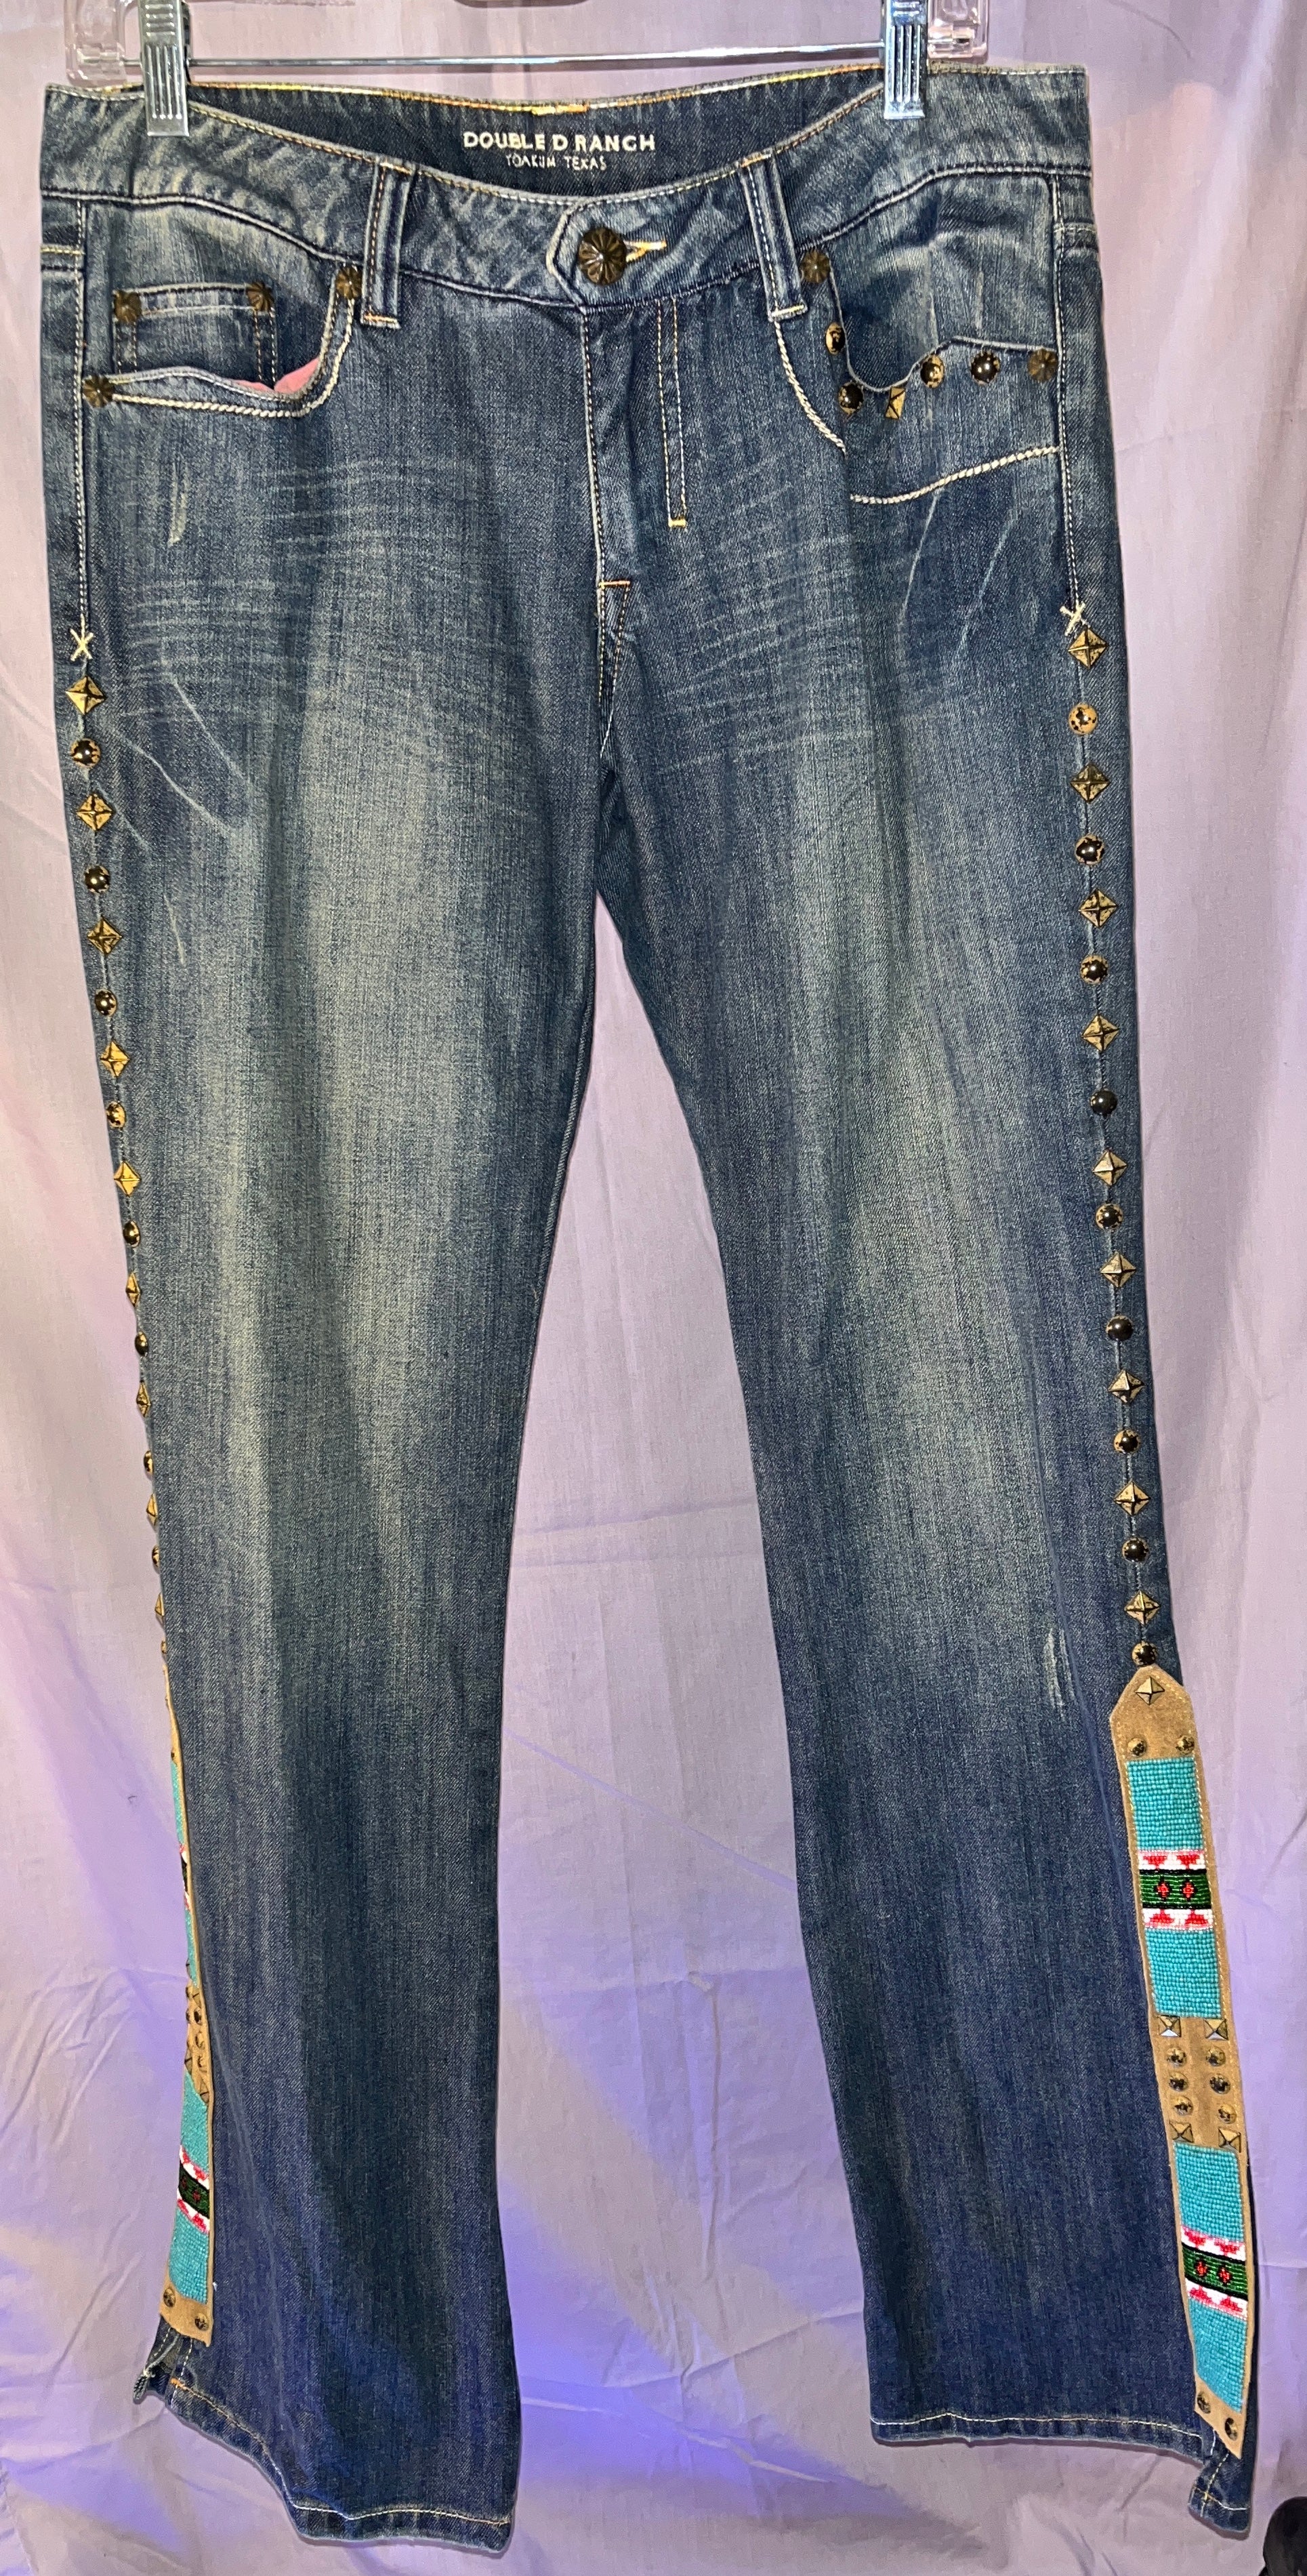 Double D Ranch Floral Jeans (Size 10 30/34) LAST PAIR – Bikini Vegas